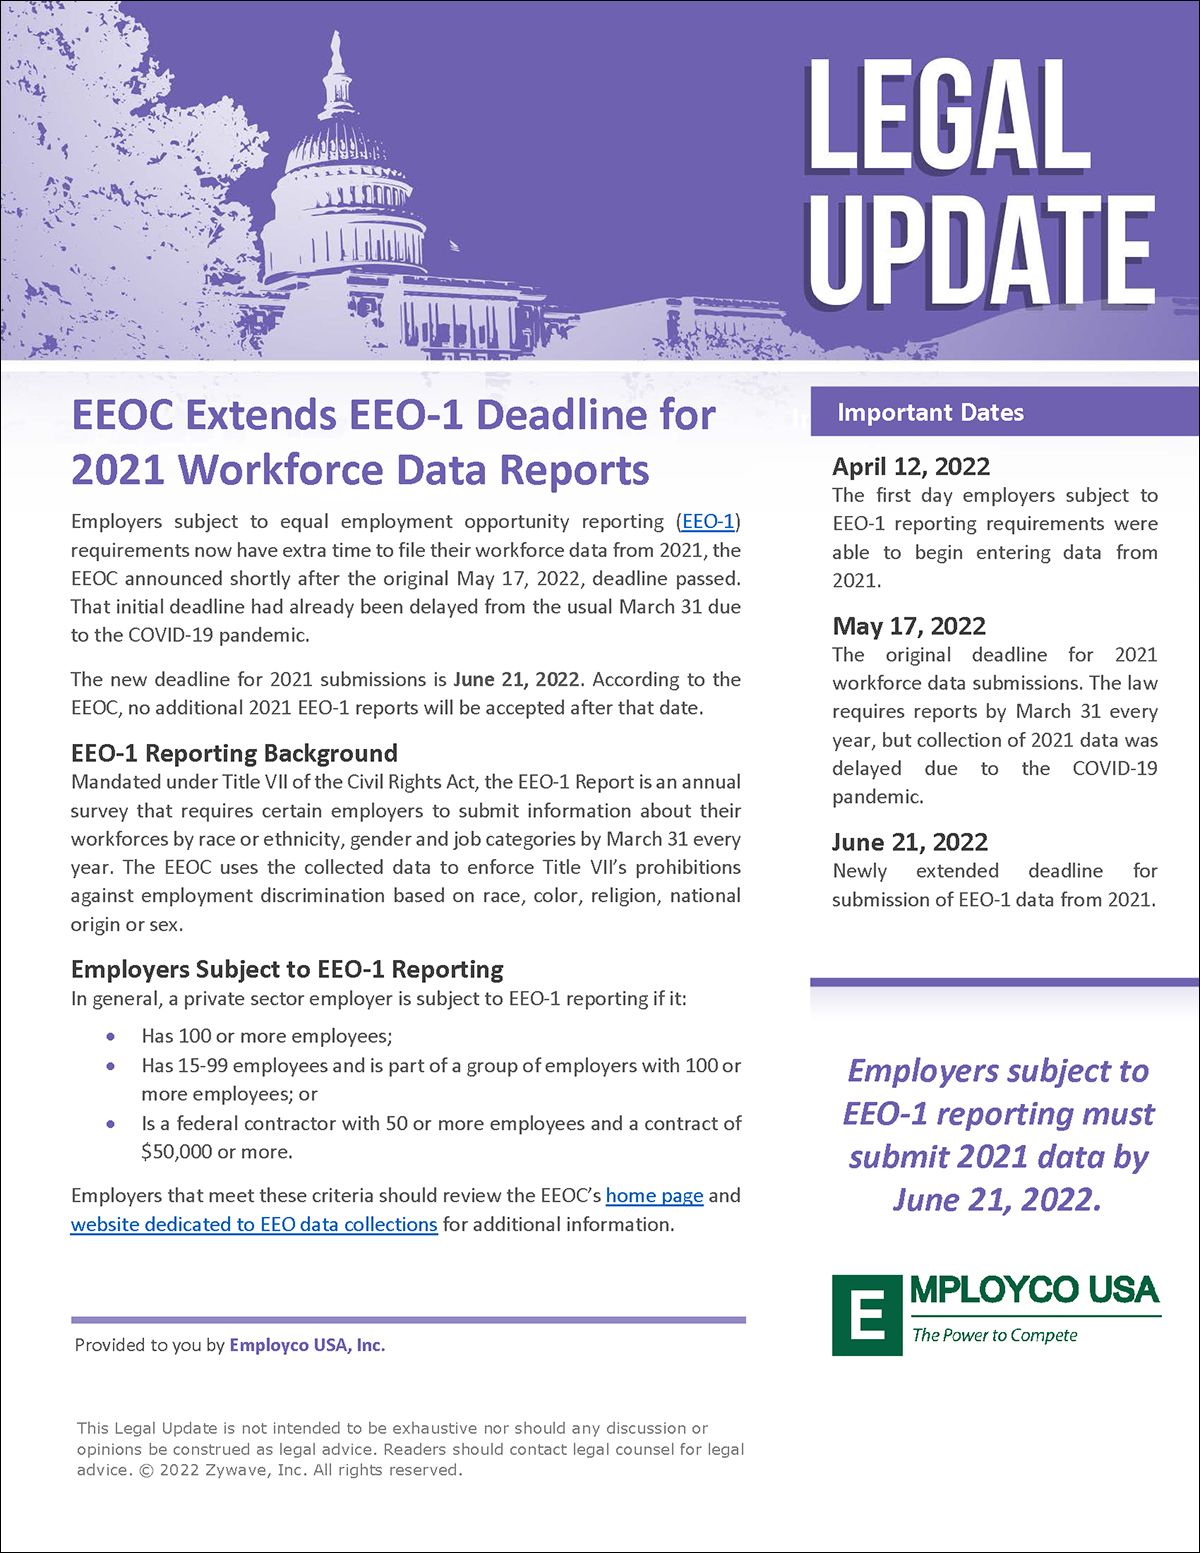 EEOC Extends EEO-1 Deadline for 2021 Workforce Data Reports